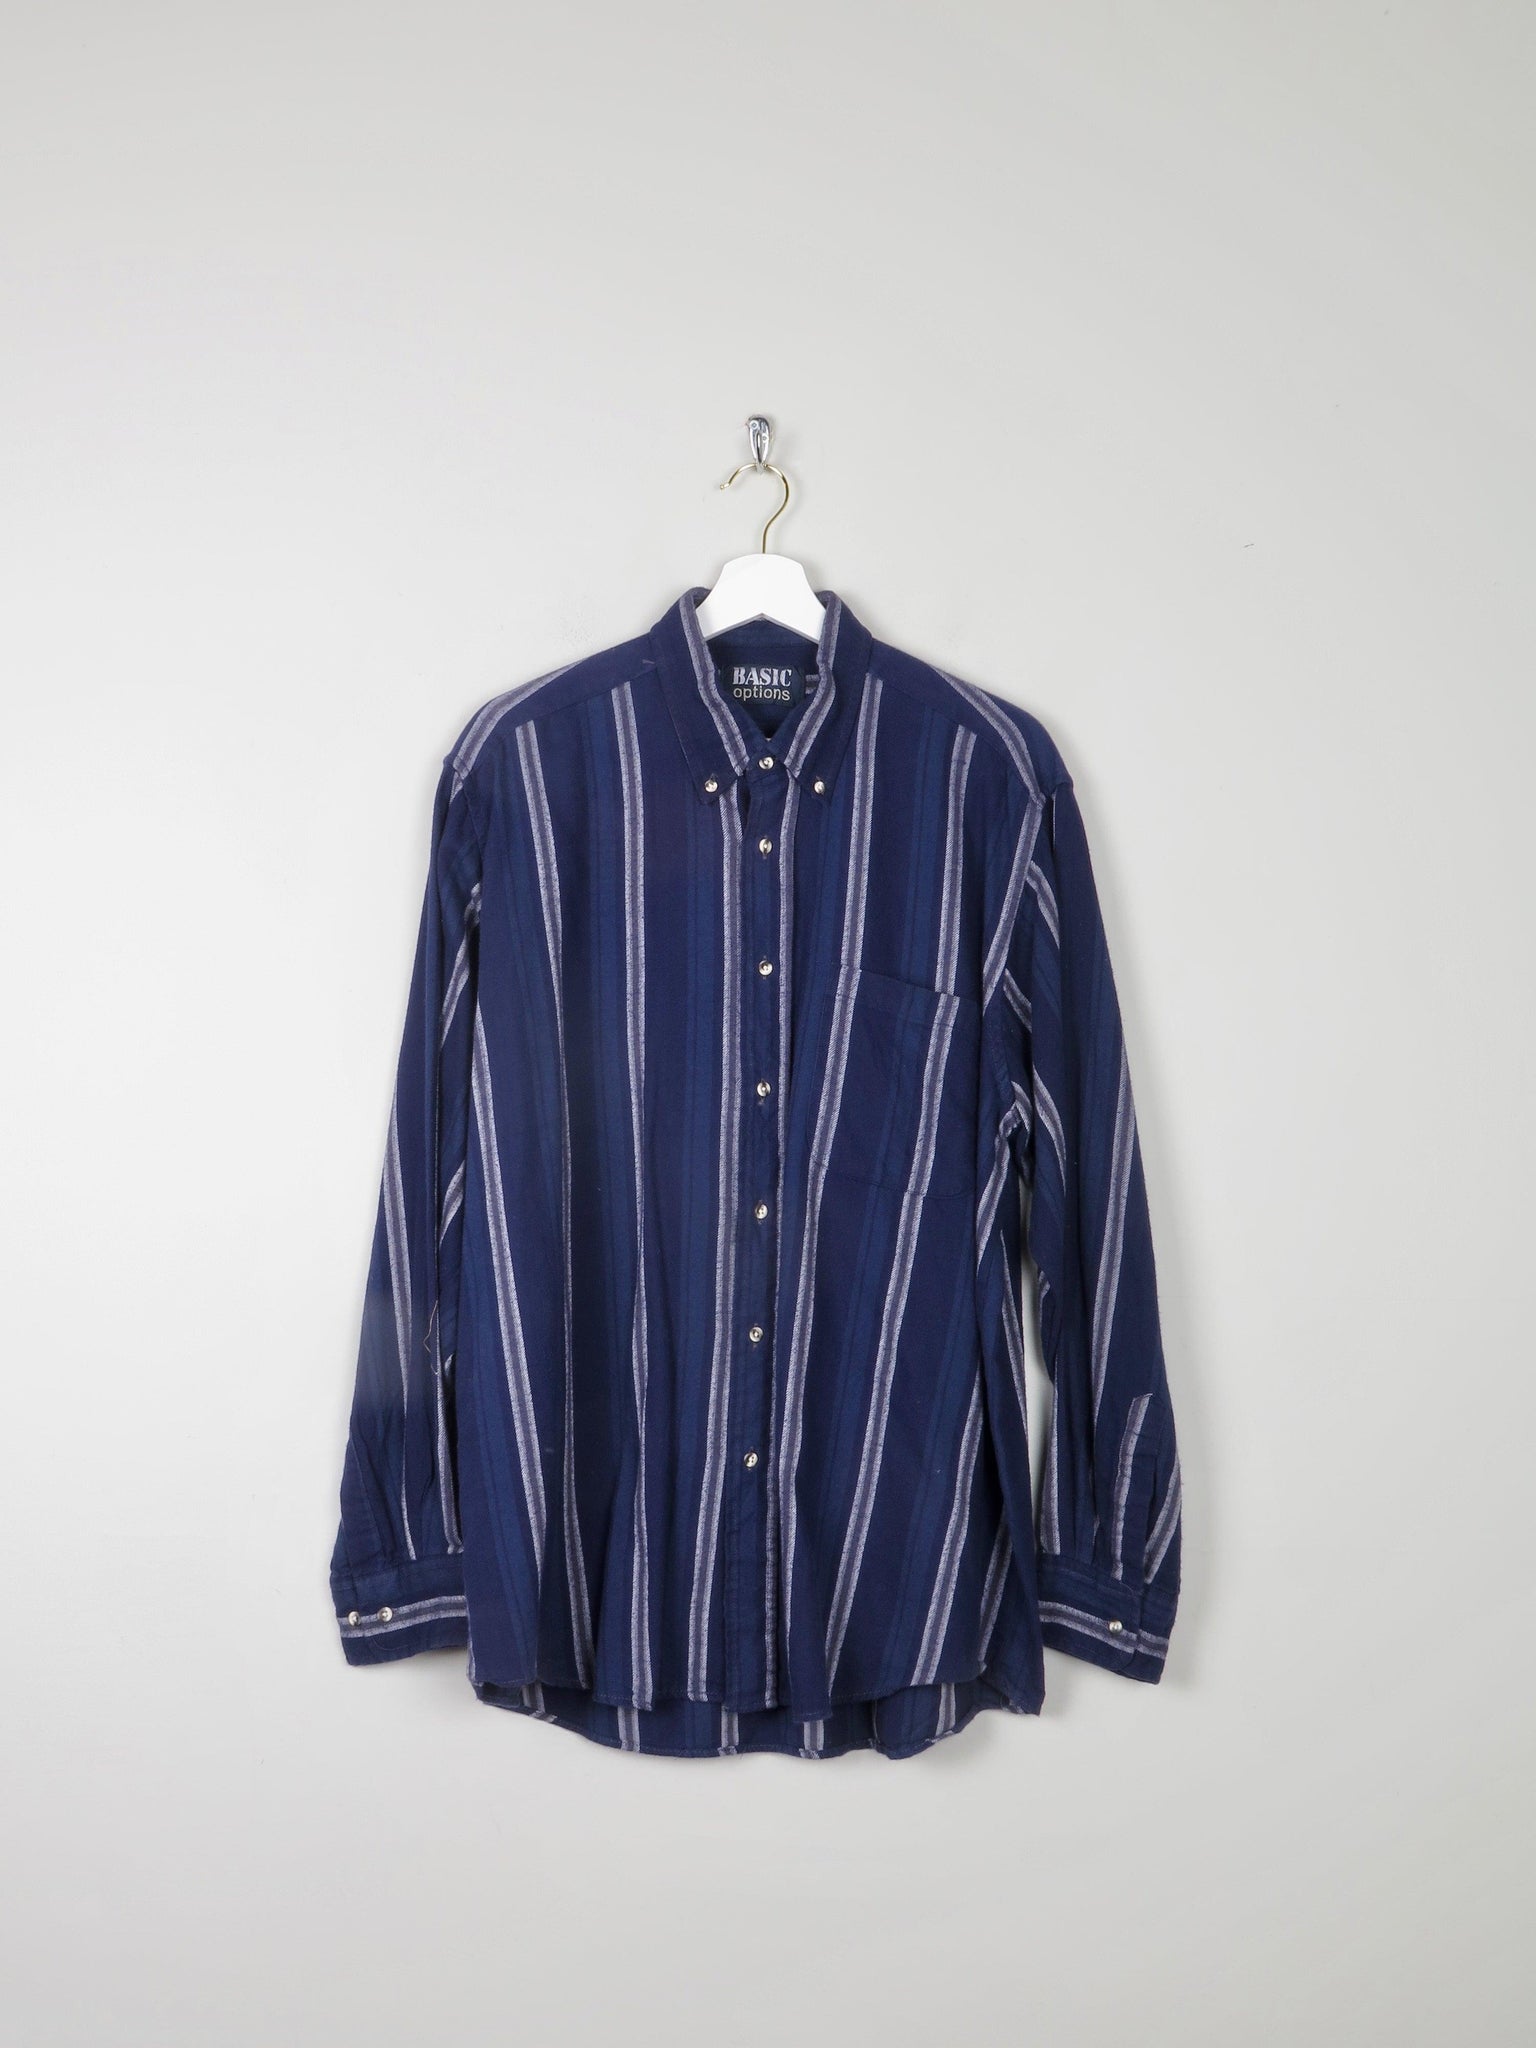 Men's Blue Striped Vintage Flannel Shirt L - The Harlequin